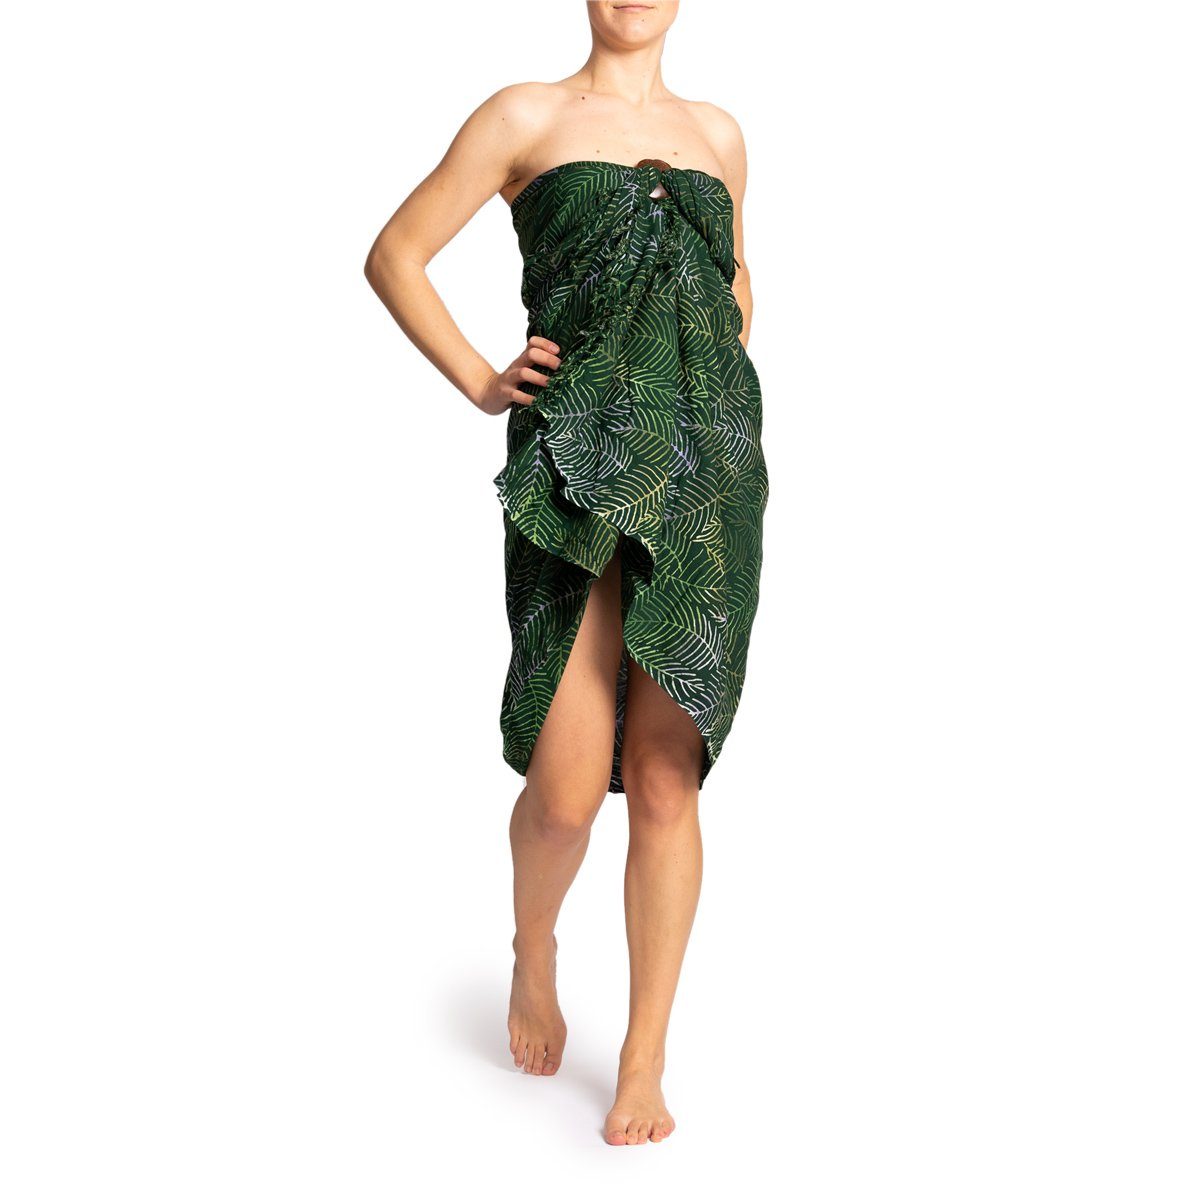 PANASIAM Pareo Sarong Wachsbatik Grüntöne aus hochwertiger Viskose Strandtuch, Strandkleid Bikini Cover-up Tuch für den Strand Schultertuch Halstuch B201 palm green